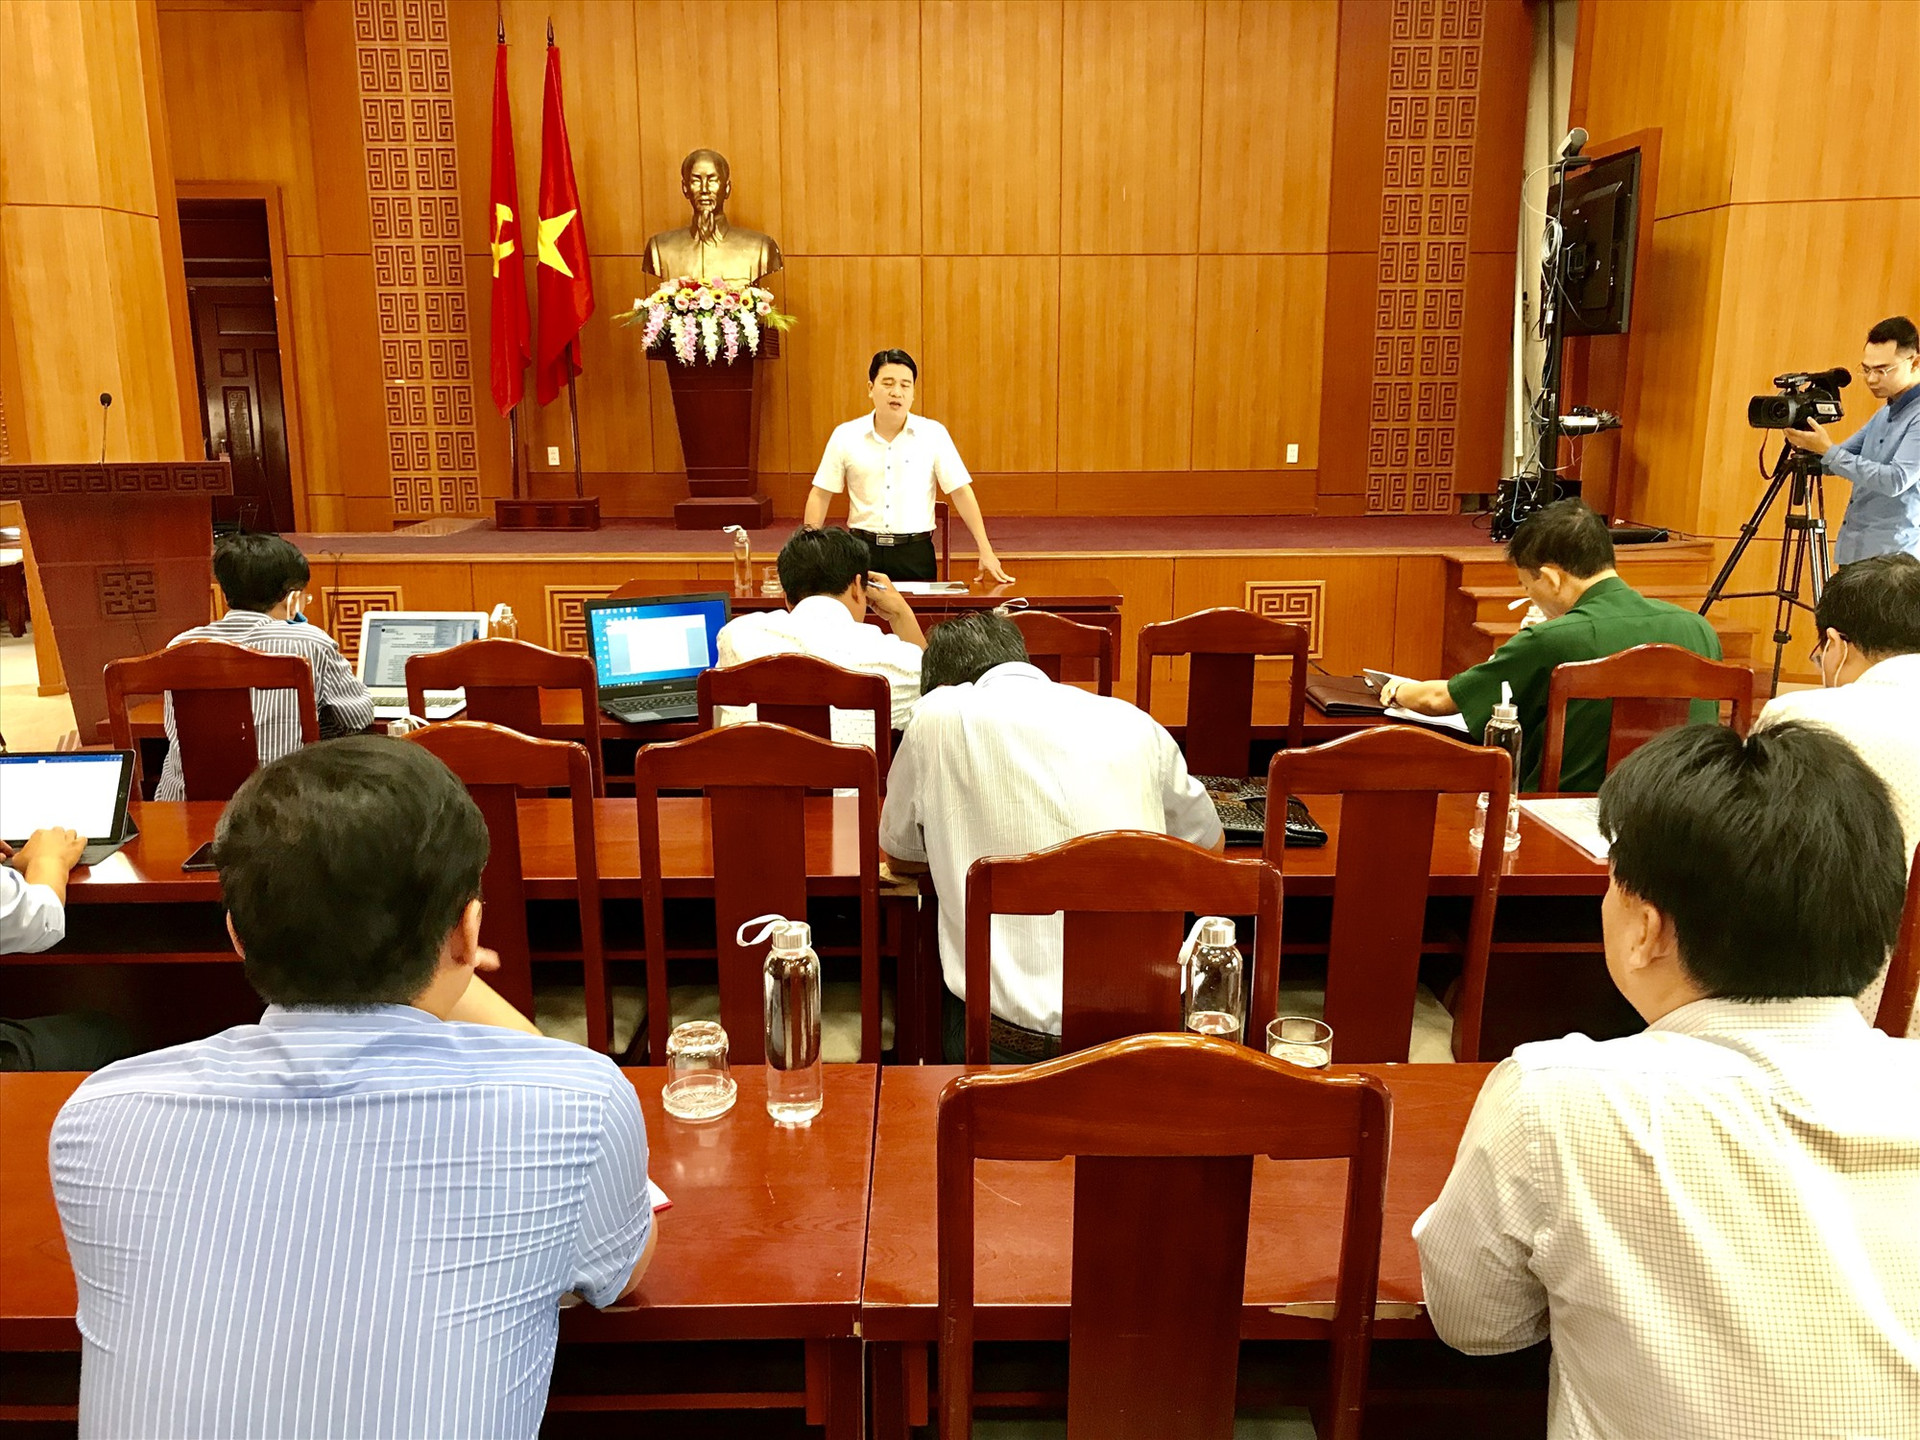 Phó Chủ tịch UBND tỉnh Trần Văn Tân chủ trì buổi họp chiều 23.3. Ảnh: Q.T